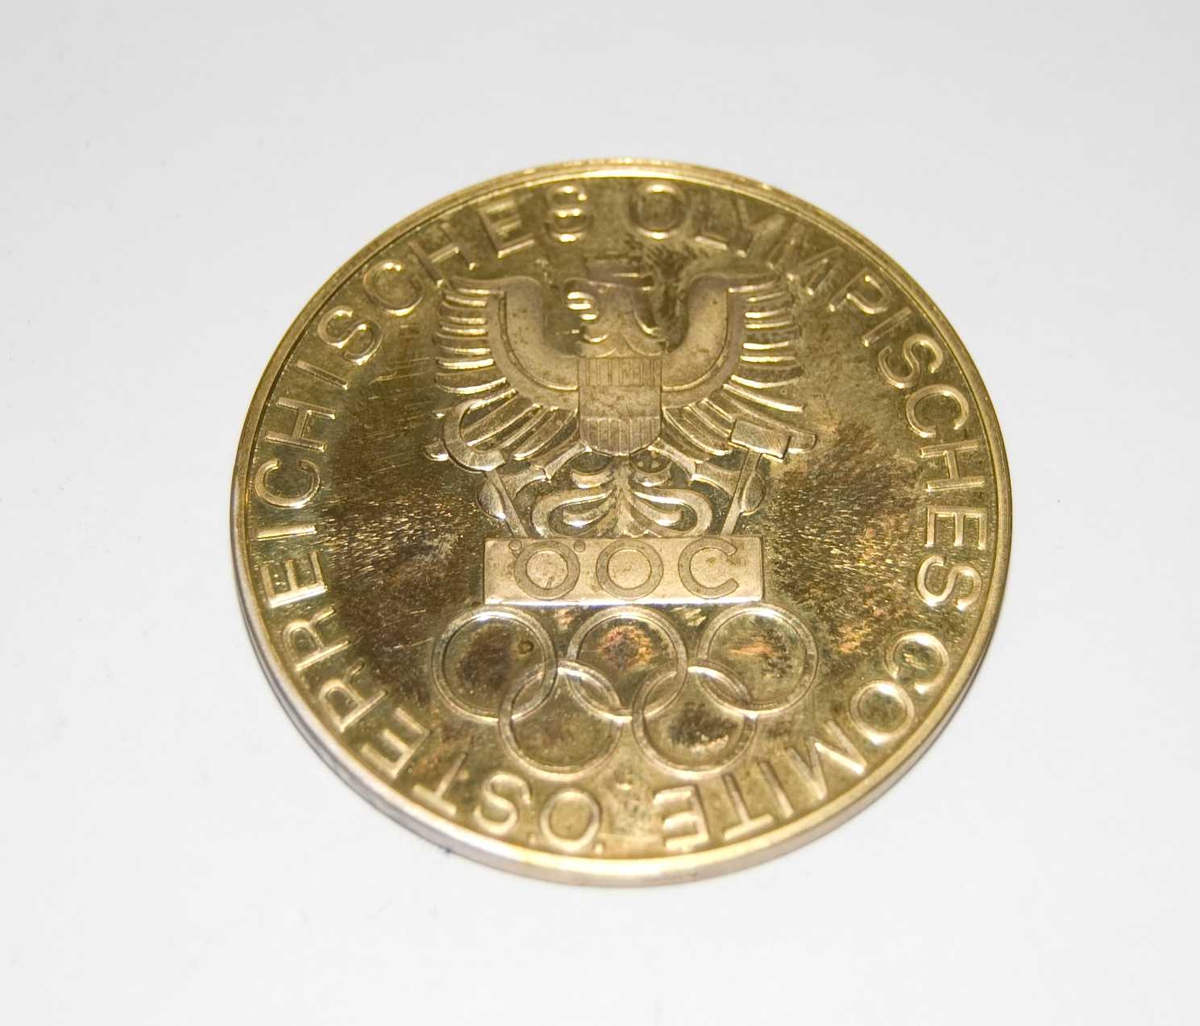 Gullfarget medalje med motiv av Østerrikes riksvåpen og de olympiske ringene. Det følger med et blått etui med samme motiv som medaljen.